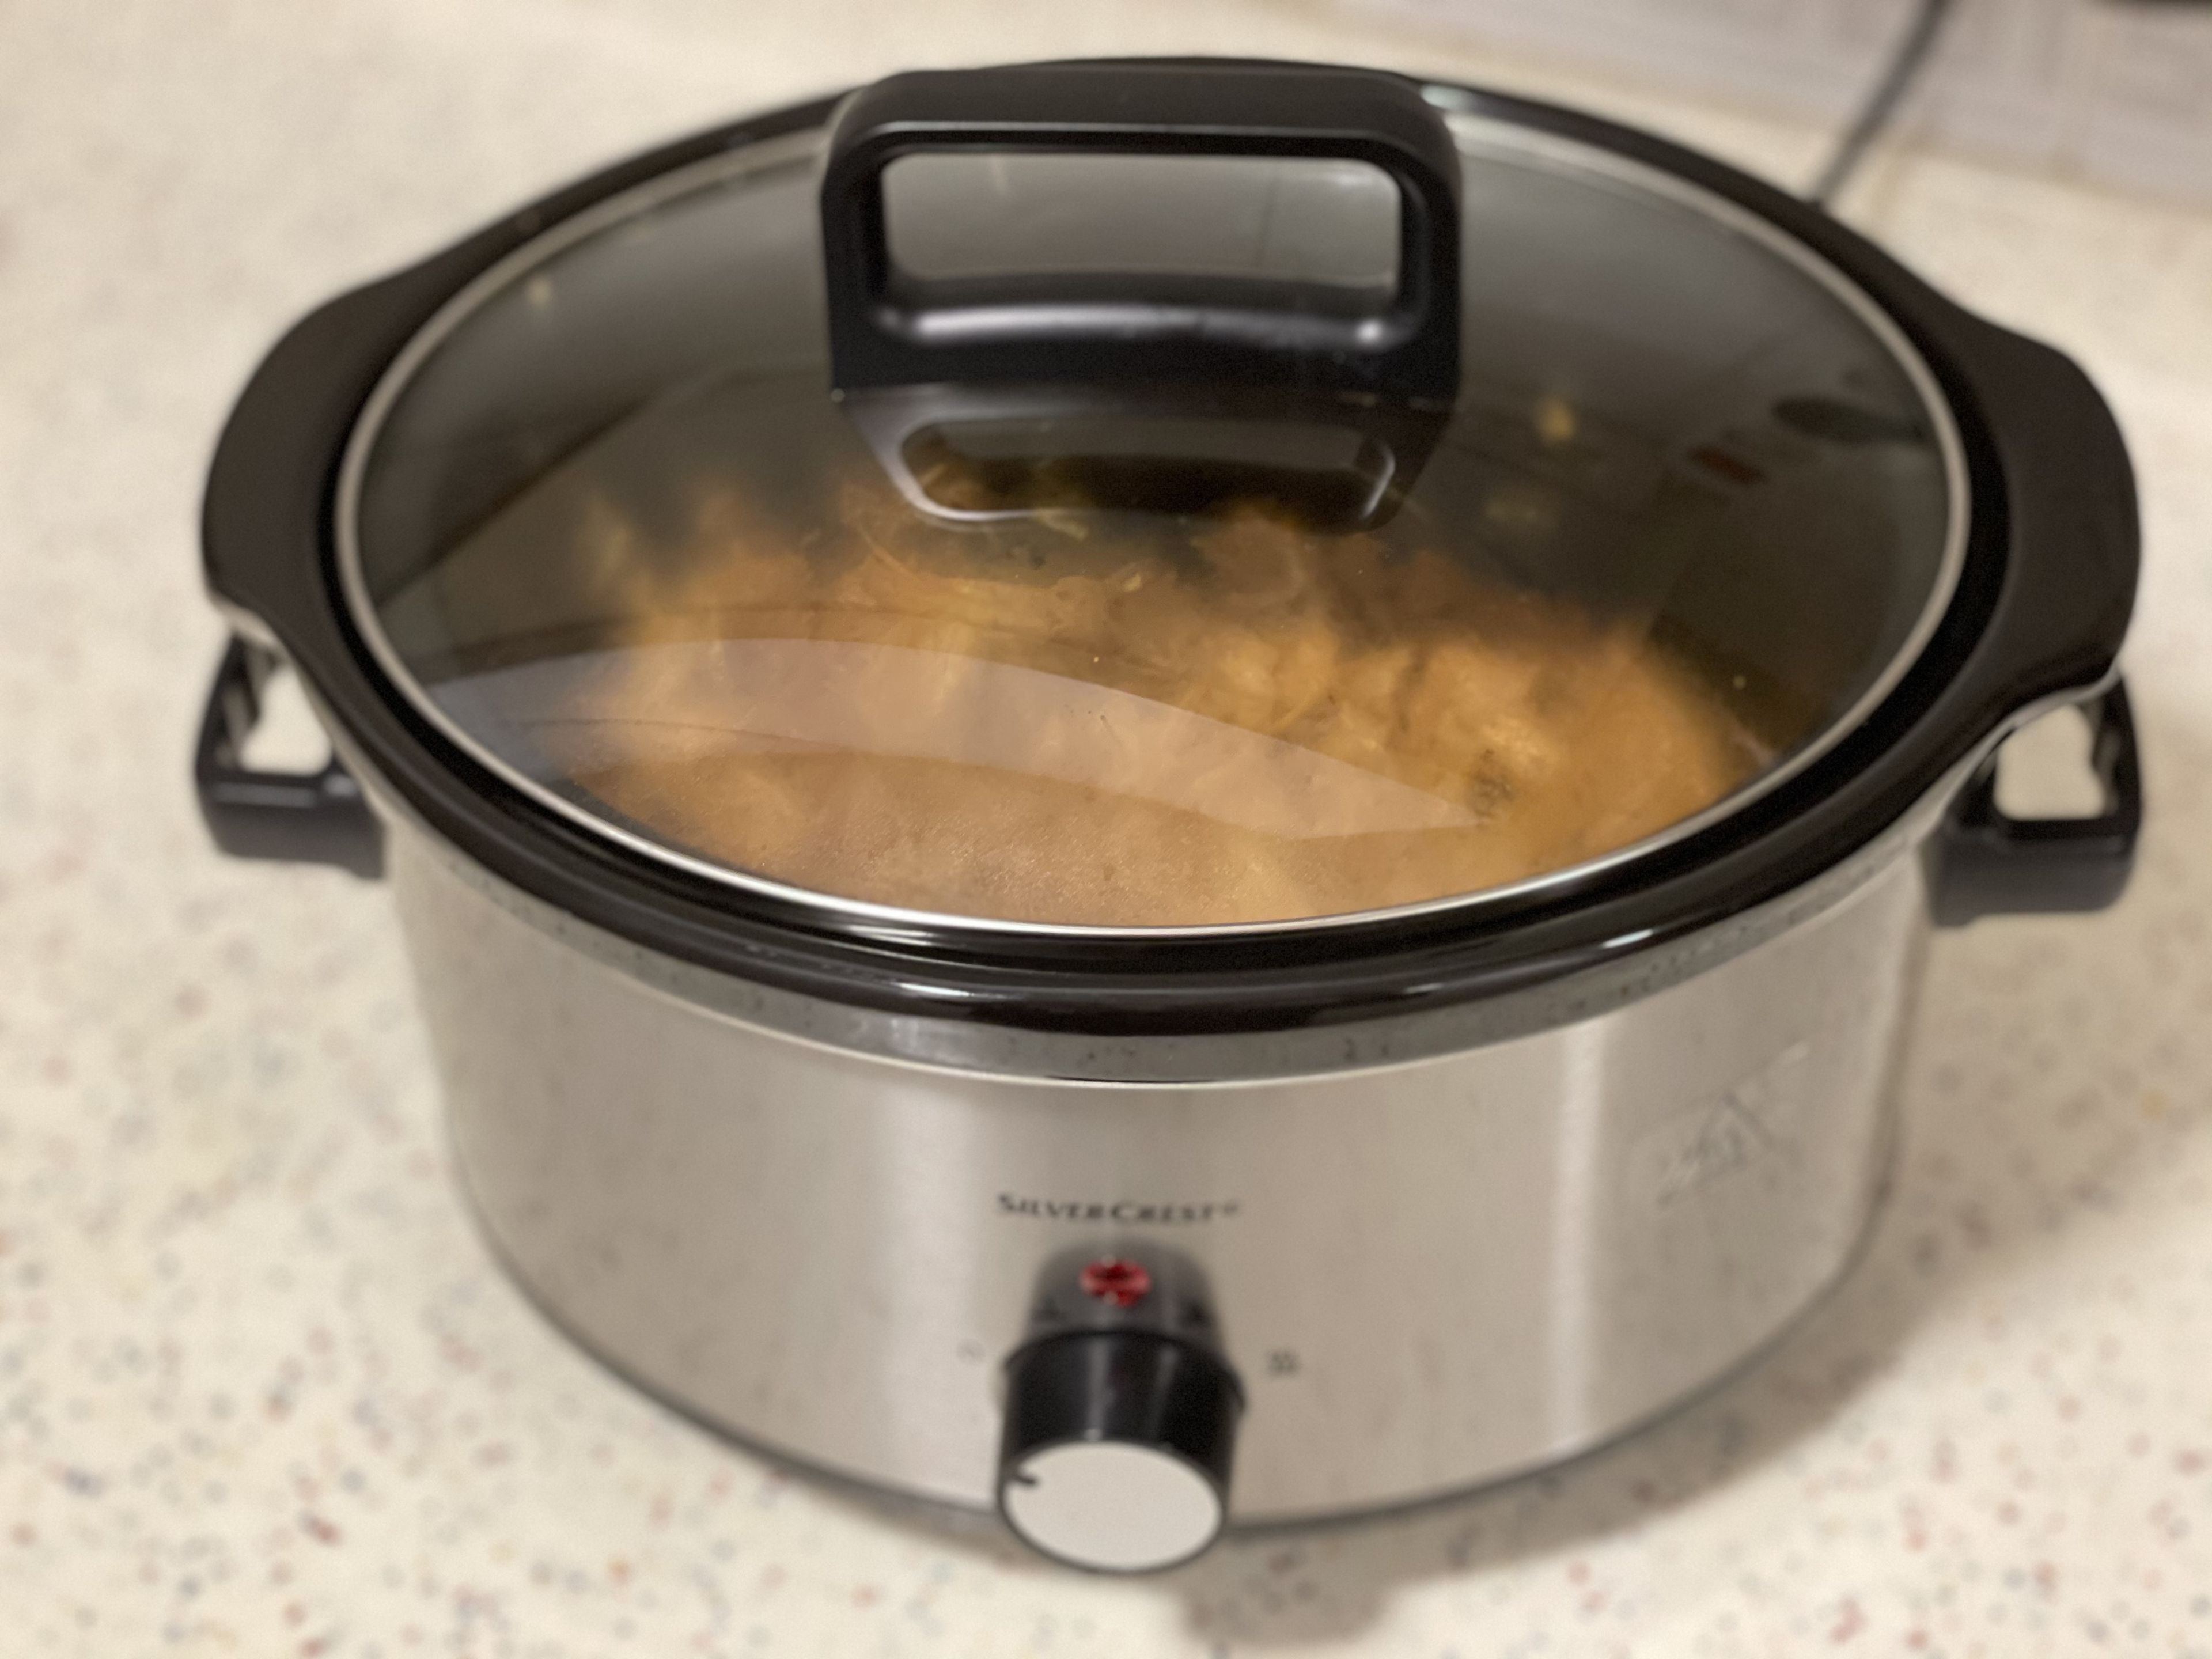 La barata olla de hierro fundido tipo LeCreuset de Lidl para asar y cocinar  jugosos platos al vapor